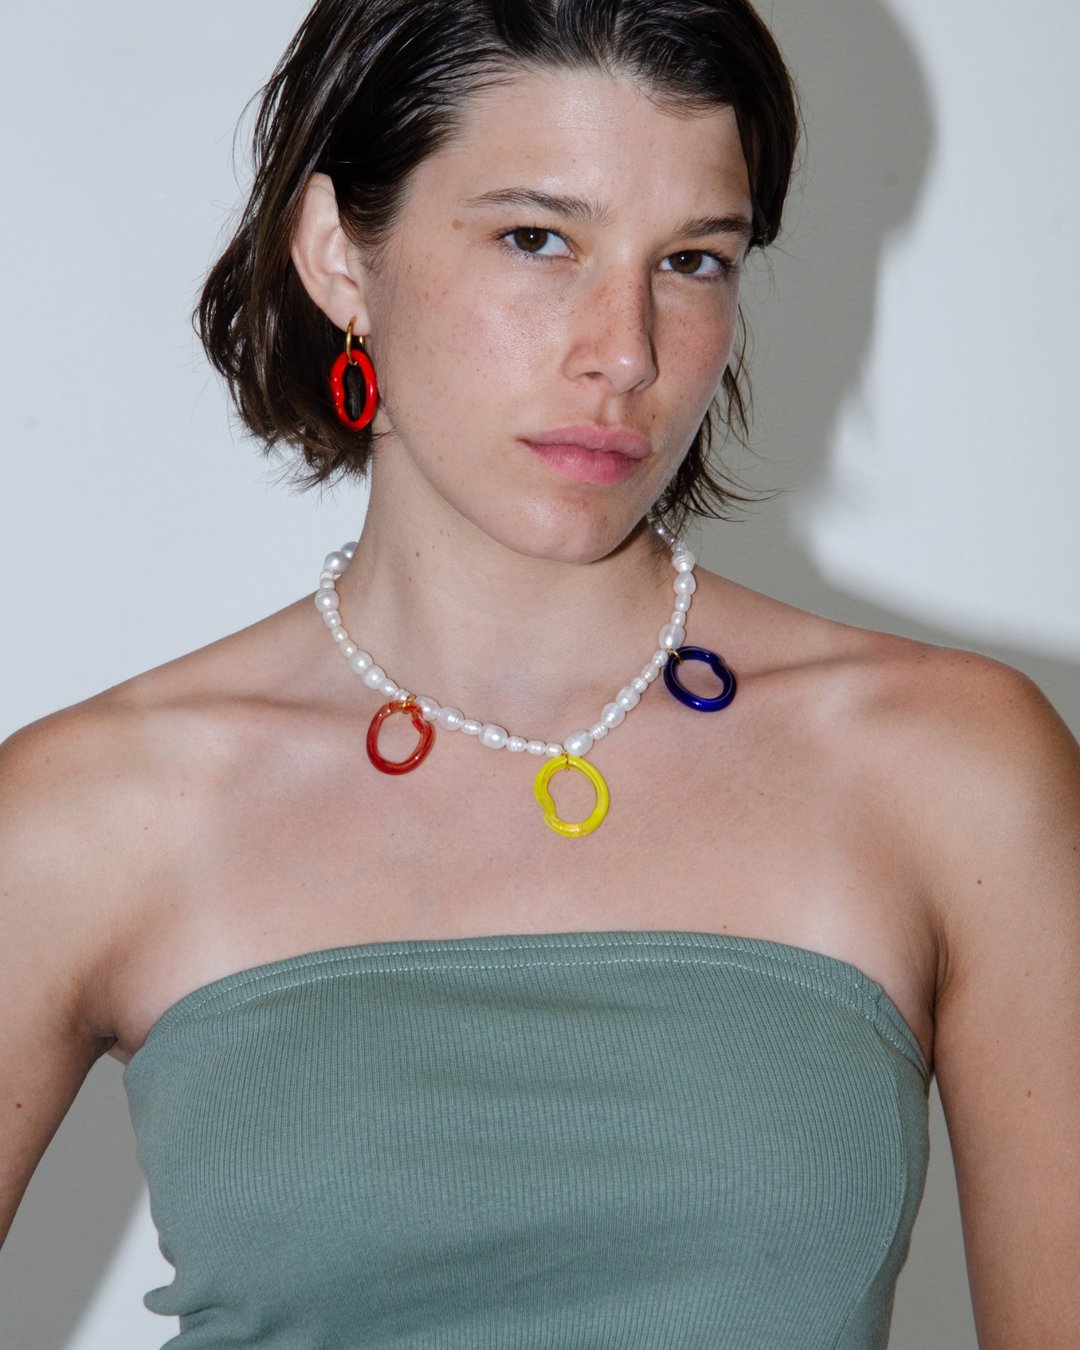 Handmade recycled glass necklace - Suplais